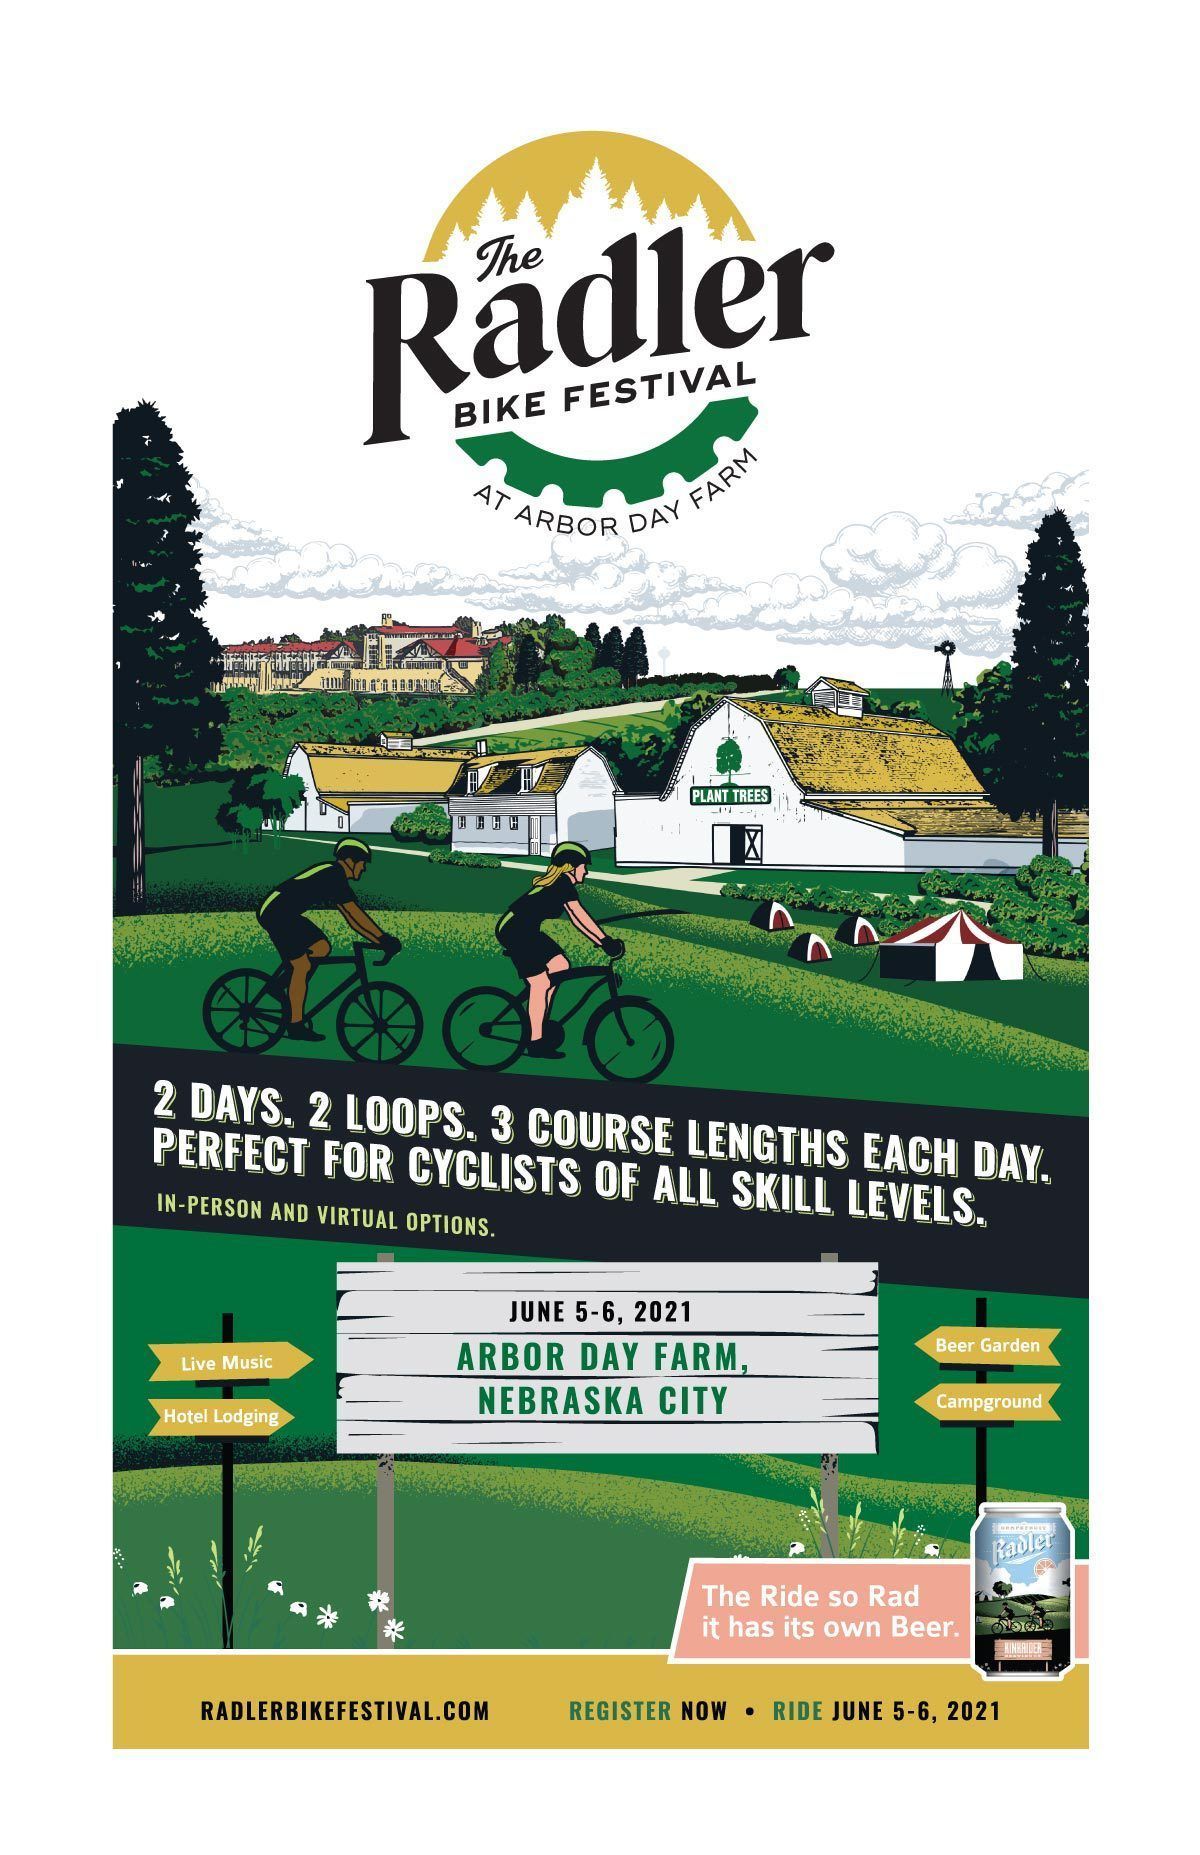 The Radler Festival at Arbor Day Farm